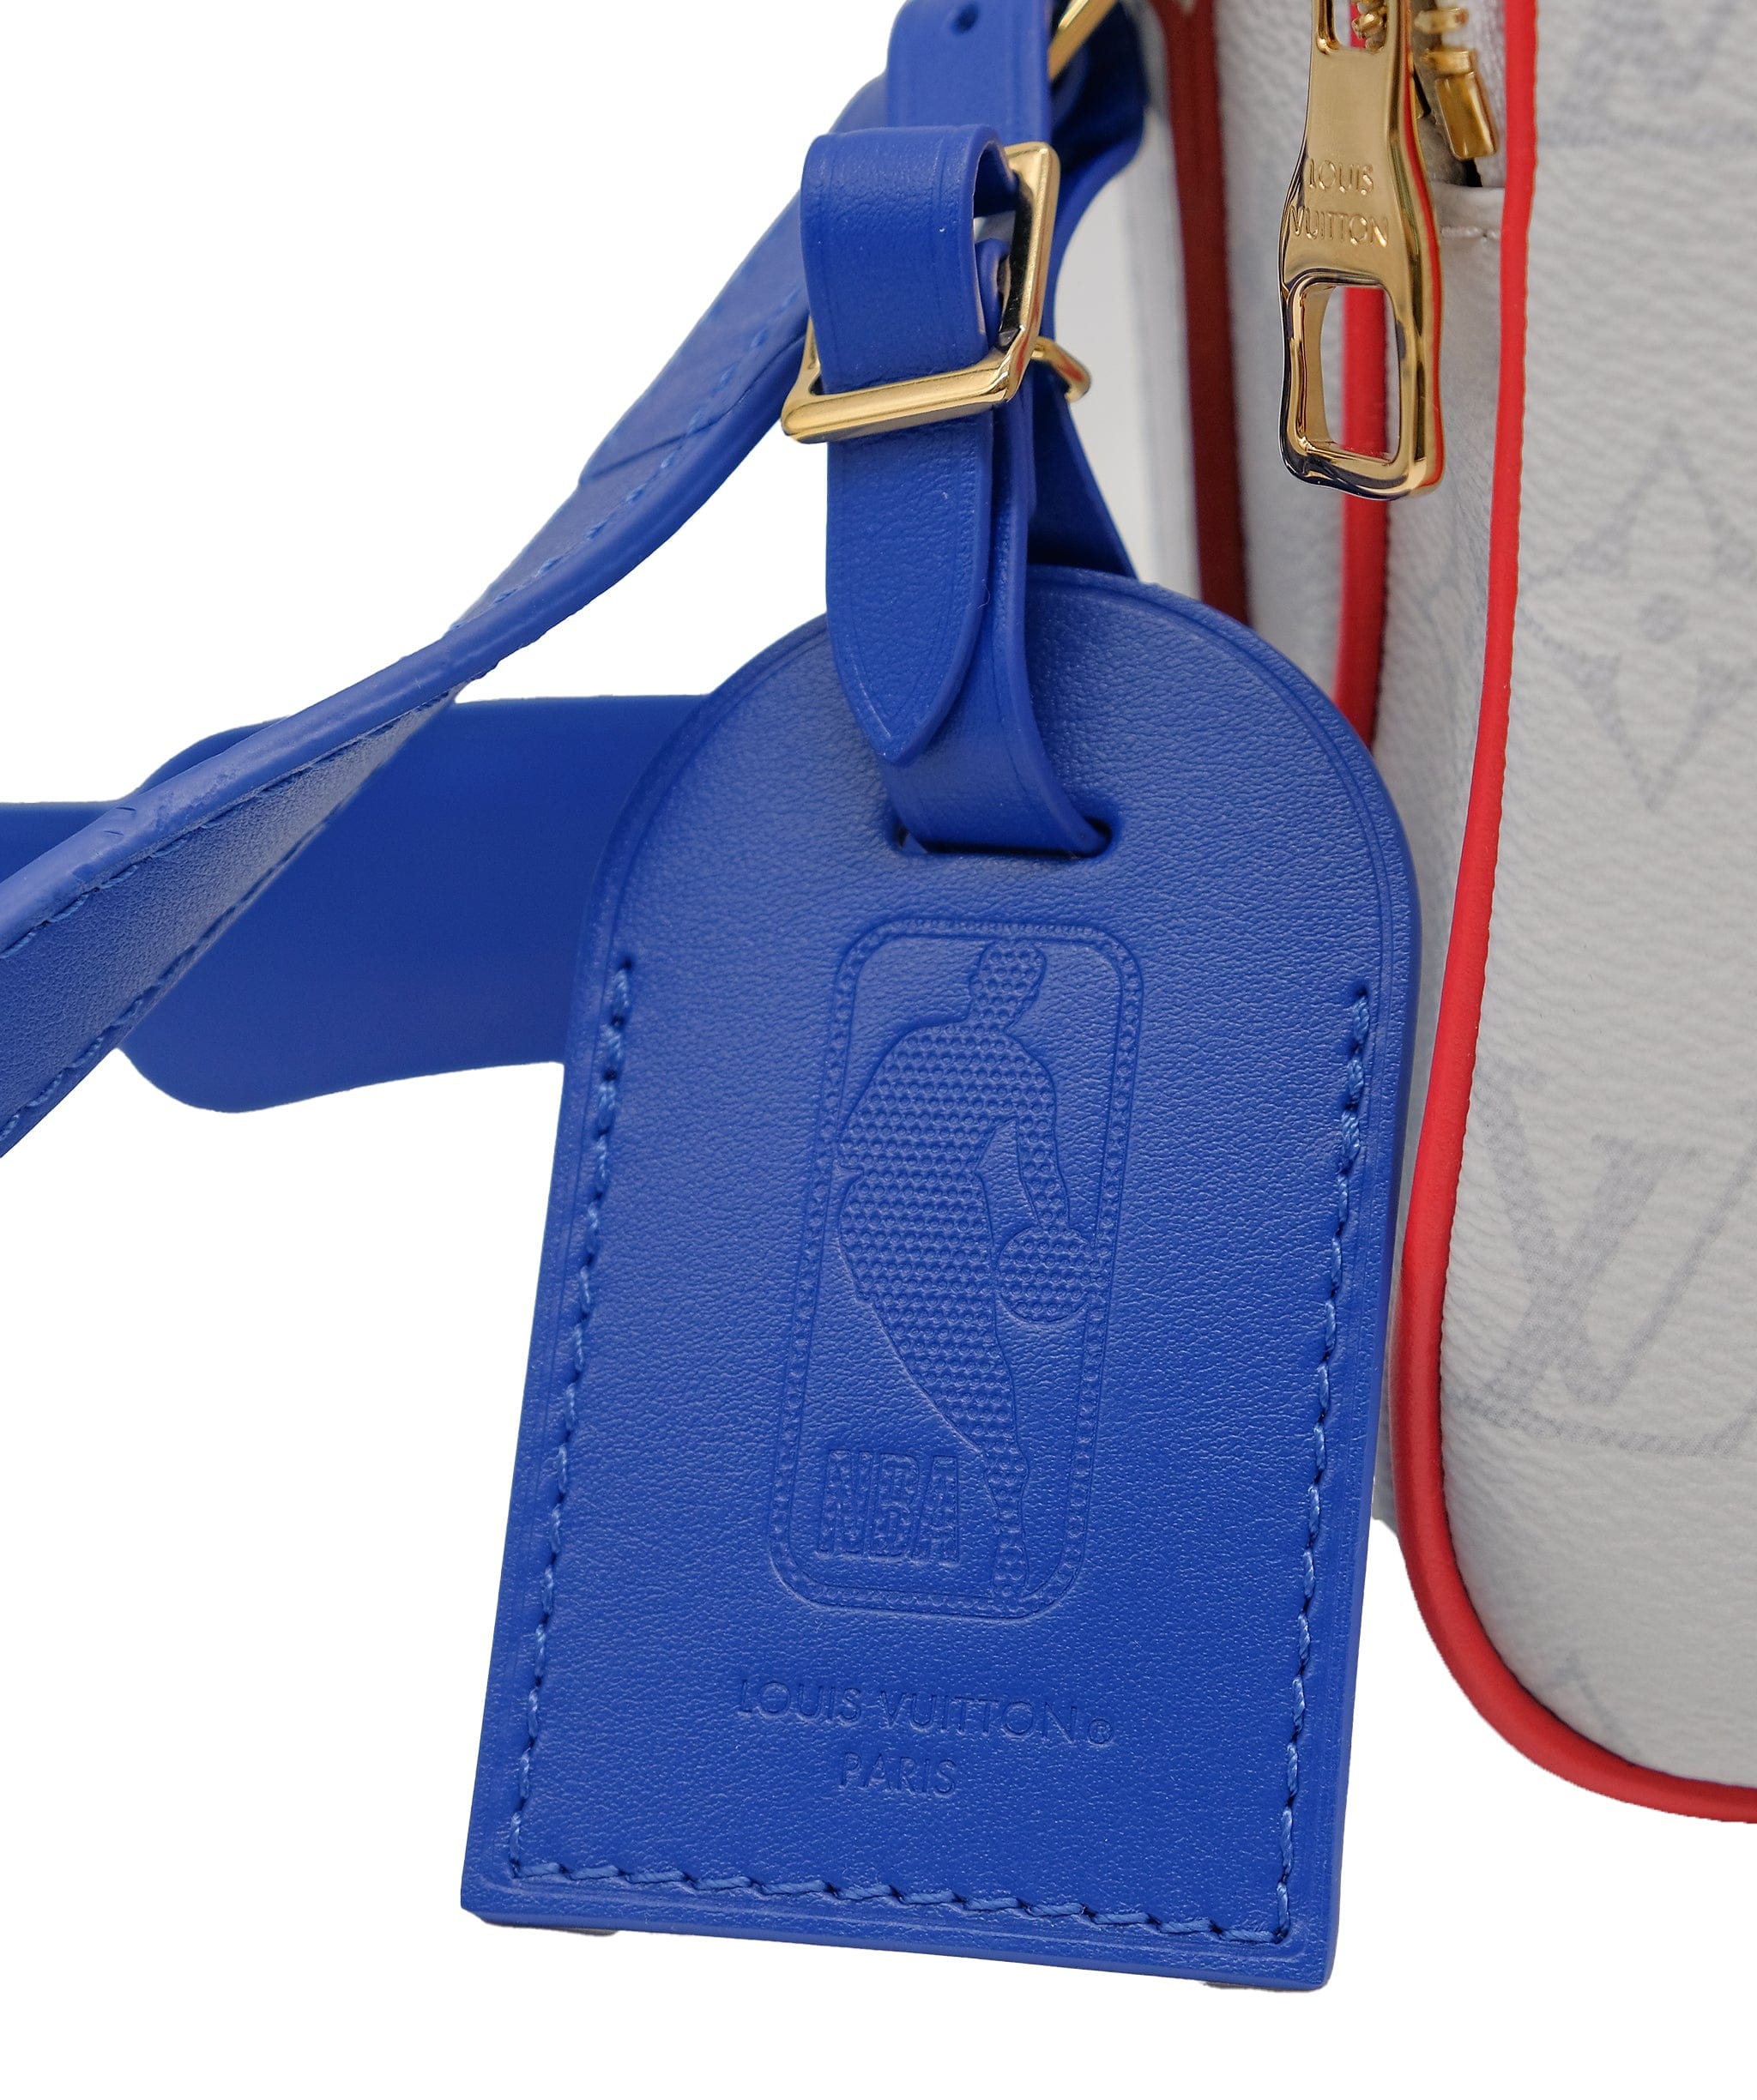 Louis Vuitton Louis Vuitton X NBA Sling bag blue white red Big RJC3324